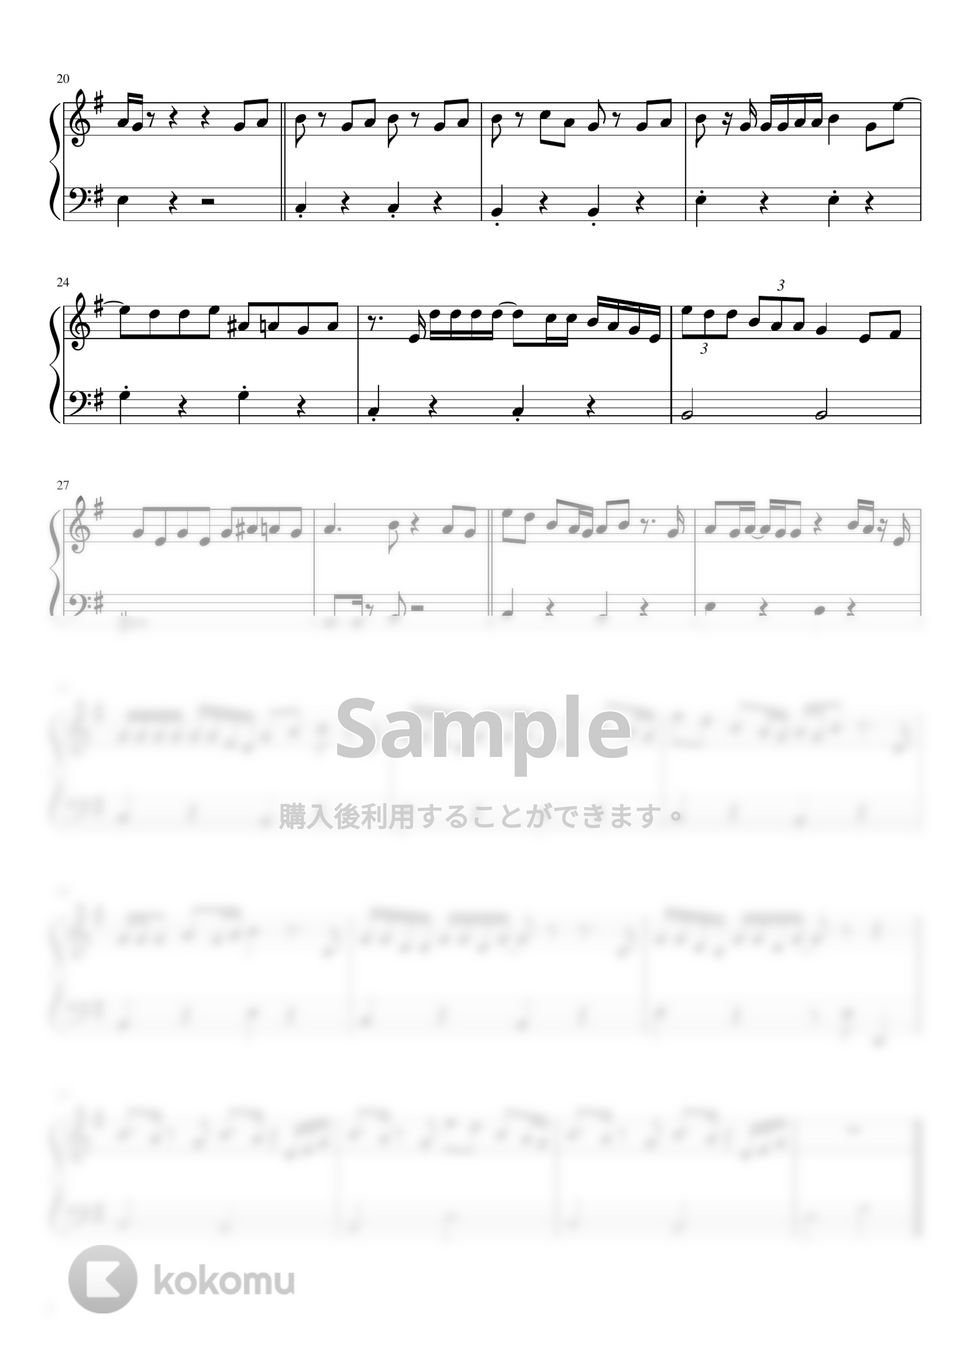 yama - 春を告げる (簡単ピアノ / ト長調 /  ワンコーラス) by さく山P